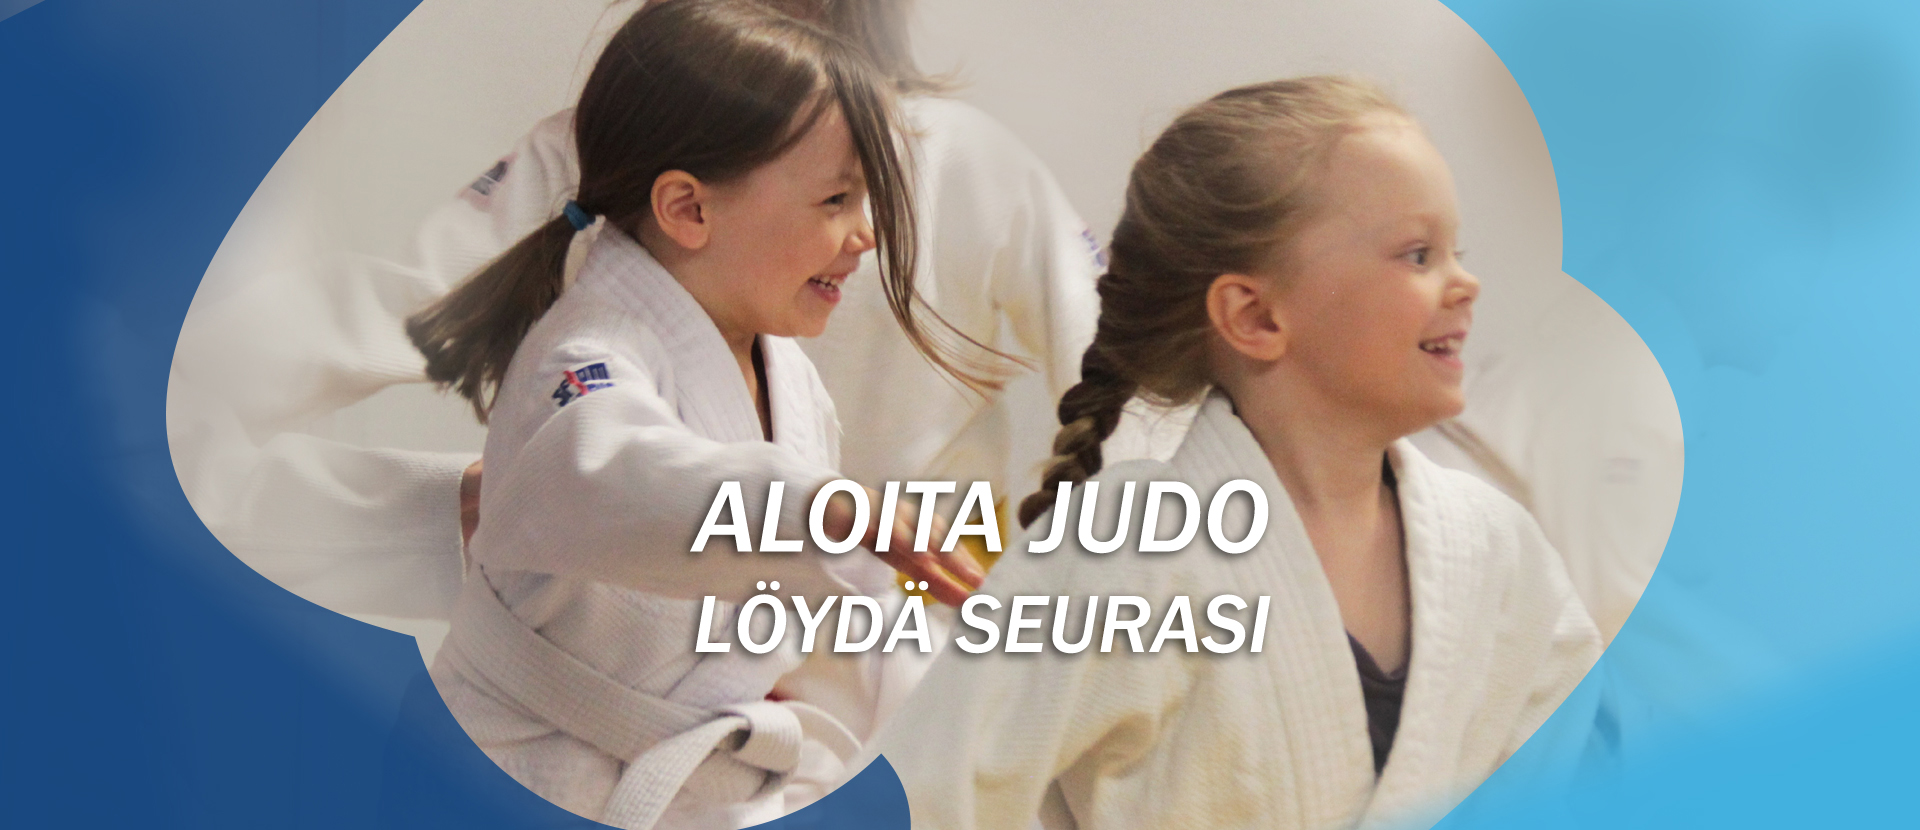 Aloita judo